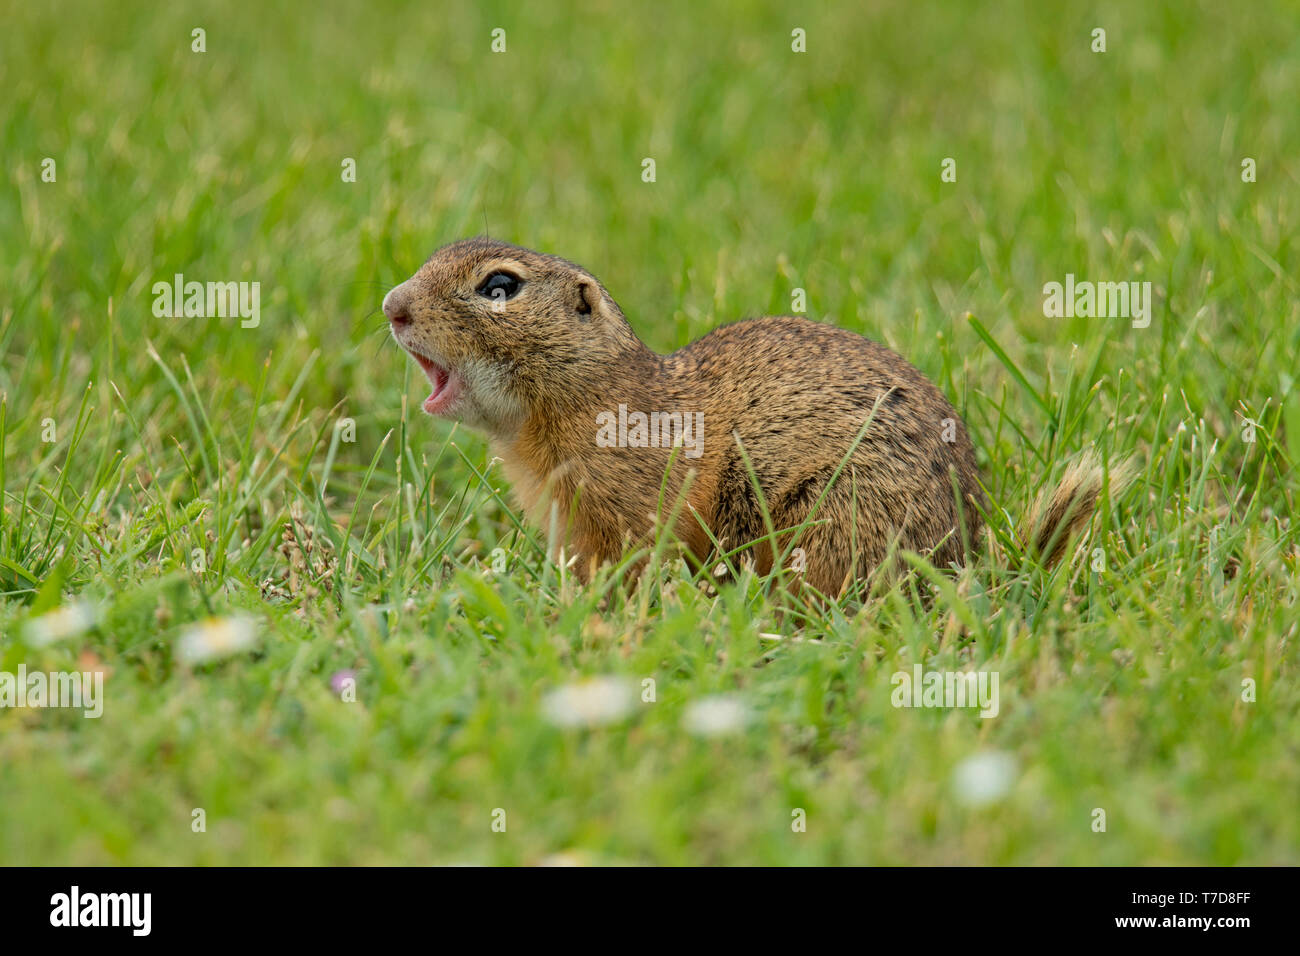 european ground squirrel, (Spermophilus citellus) Stock Photo